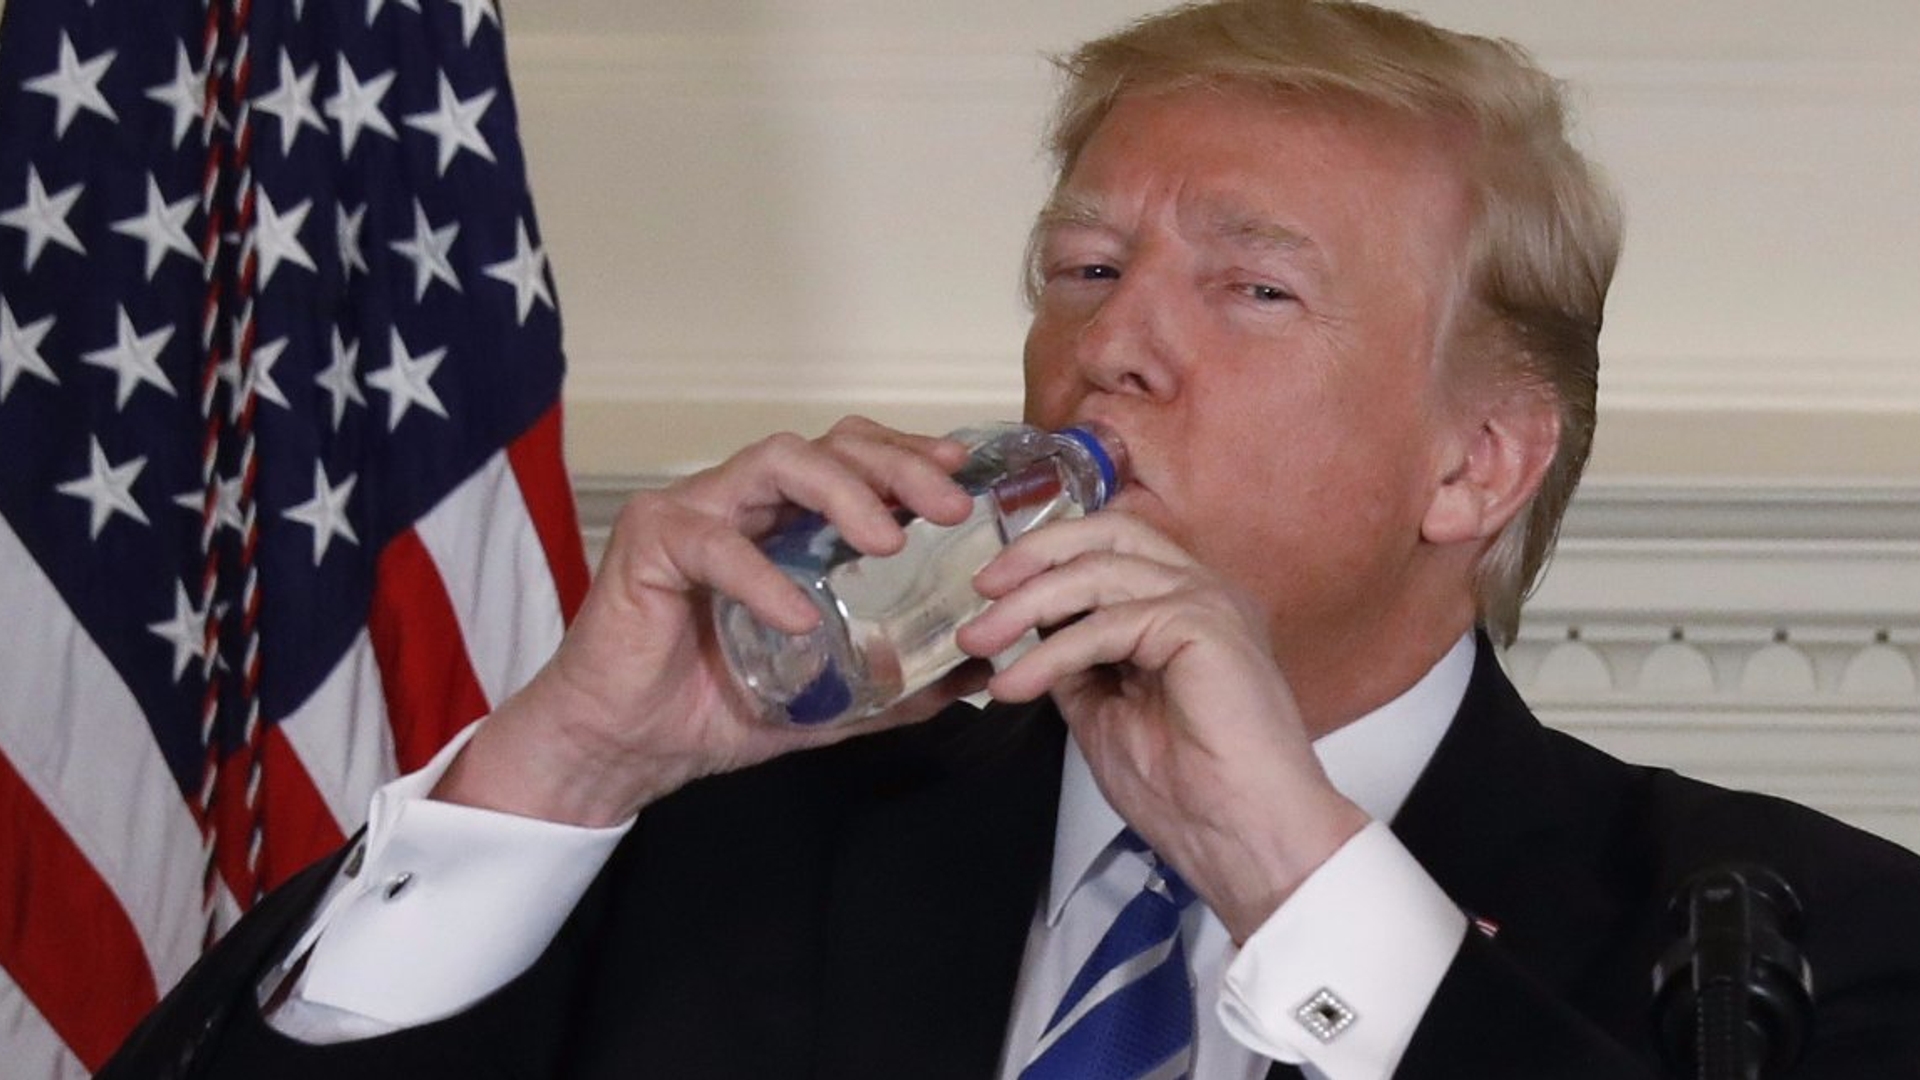 Trump drinkt water